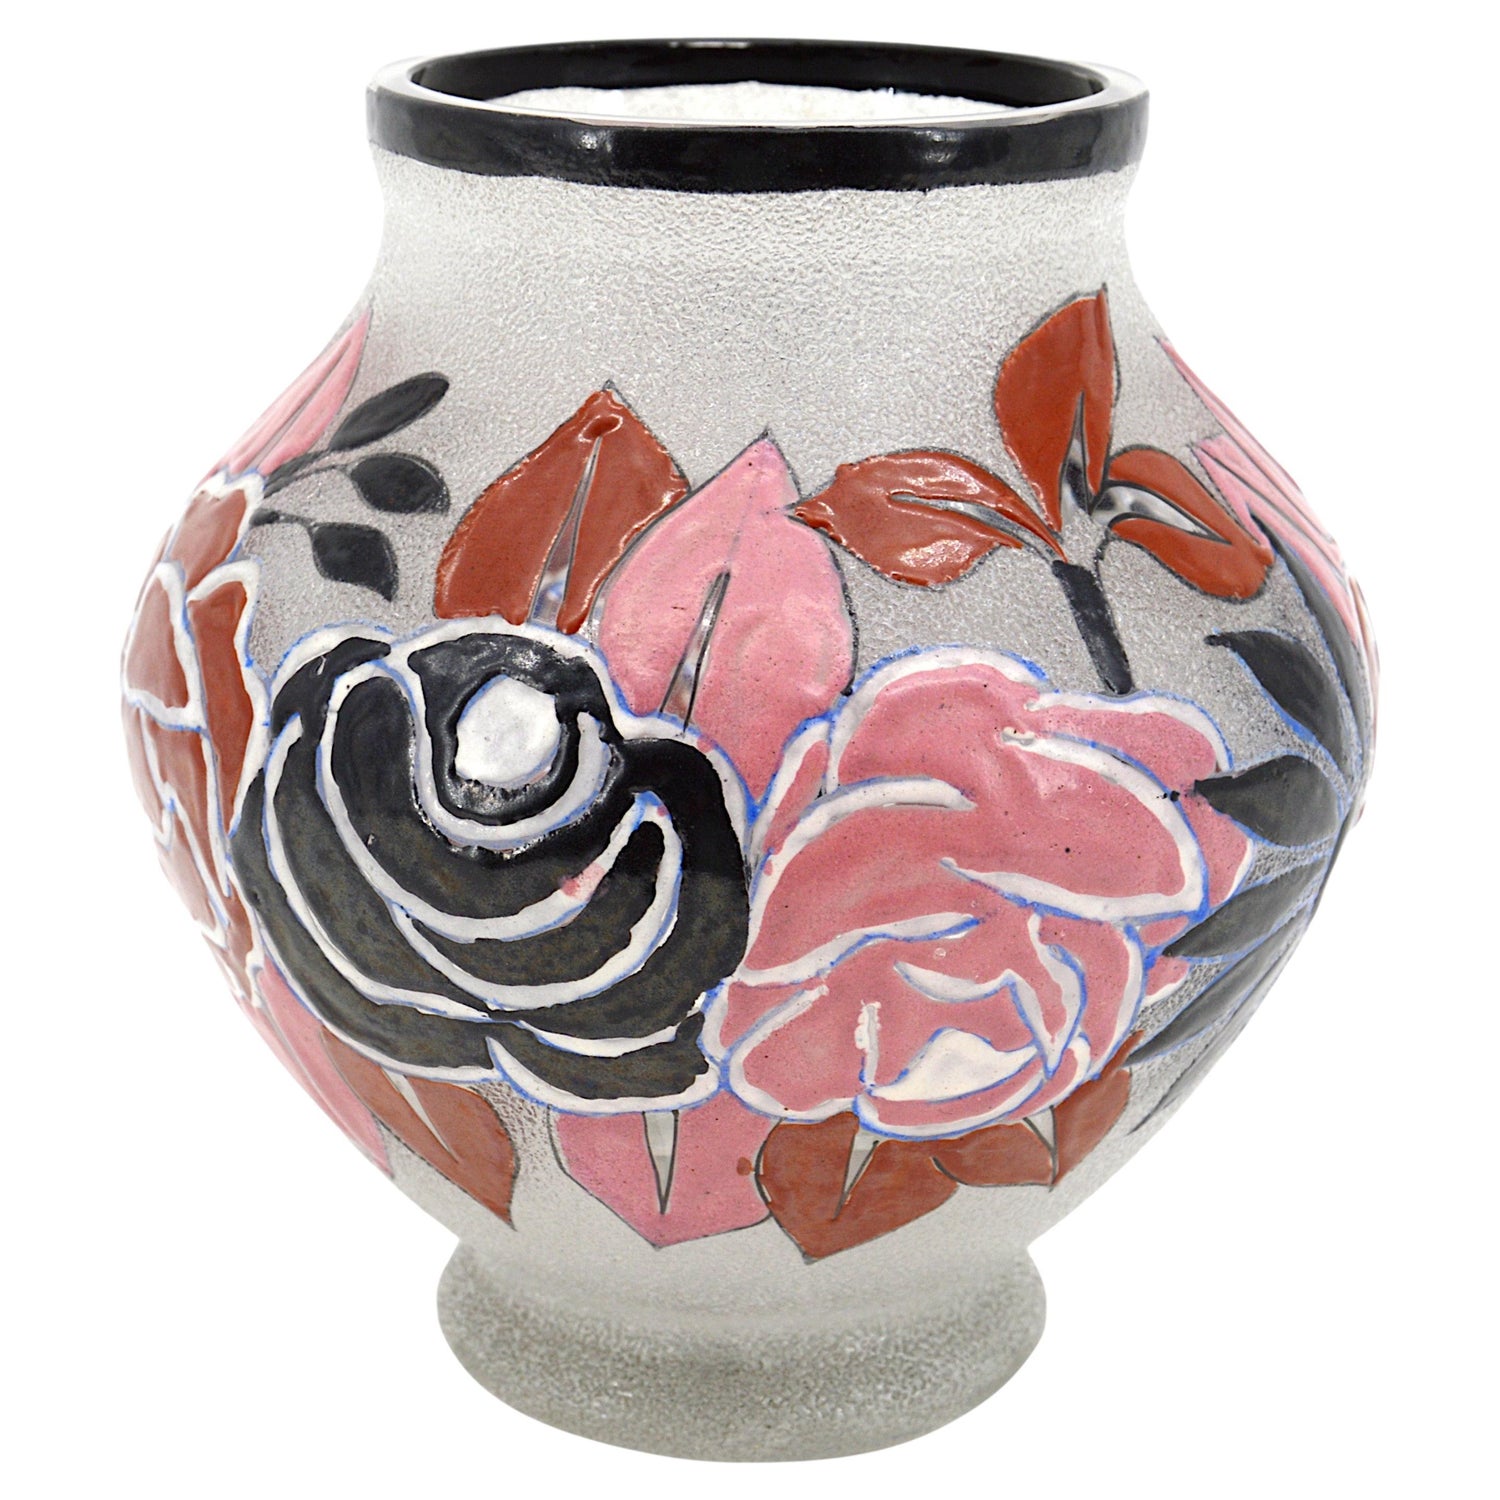 https://a.1stdibscdn.com/adrien-mazoyer-french-art-deco-enameled-flower-vase-1920s-for-sale/f_23123/f_368495821698678016573/f_36849582_1698678018291_bg_processed.jpg?width=1500